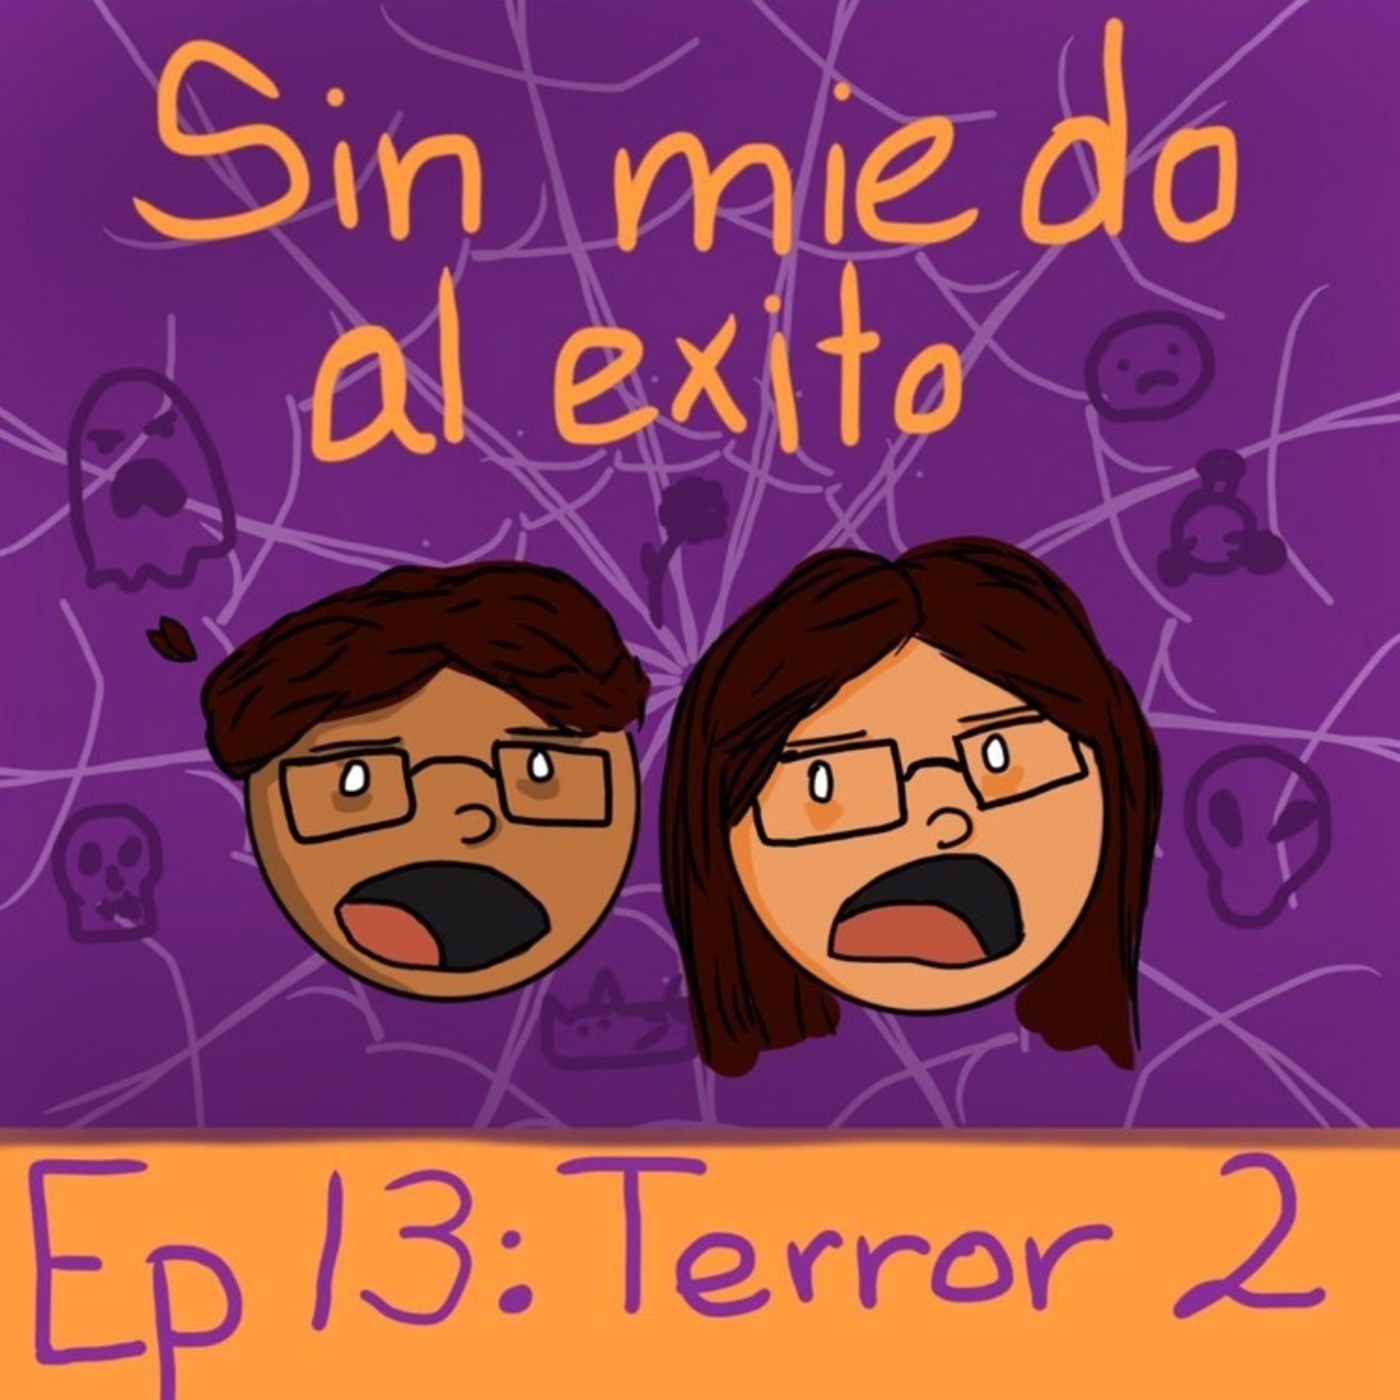 Ep 13: Terror 2.0